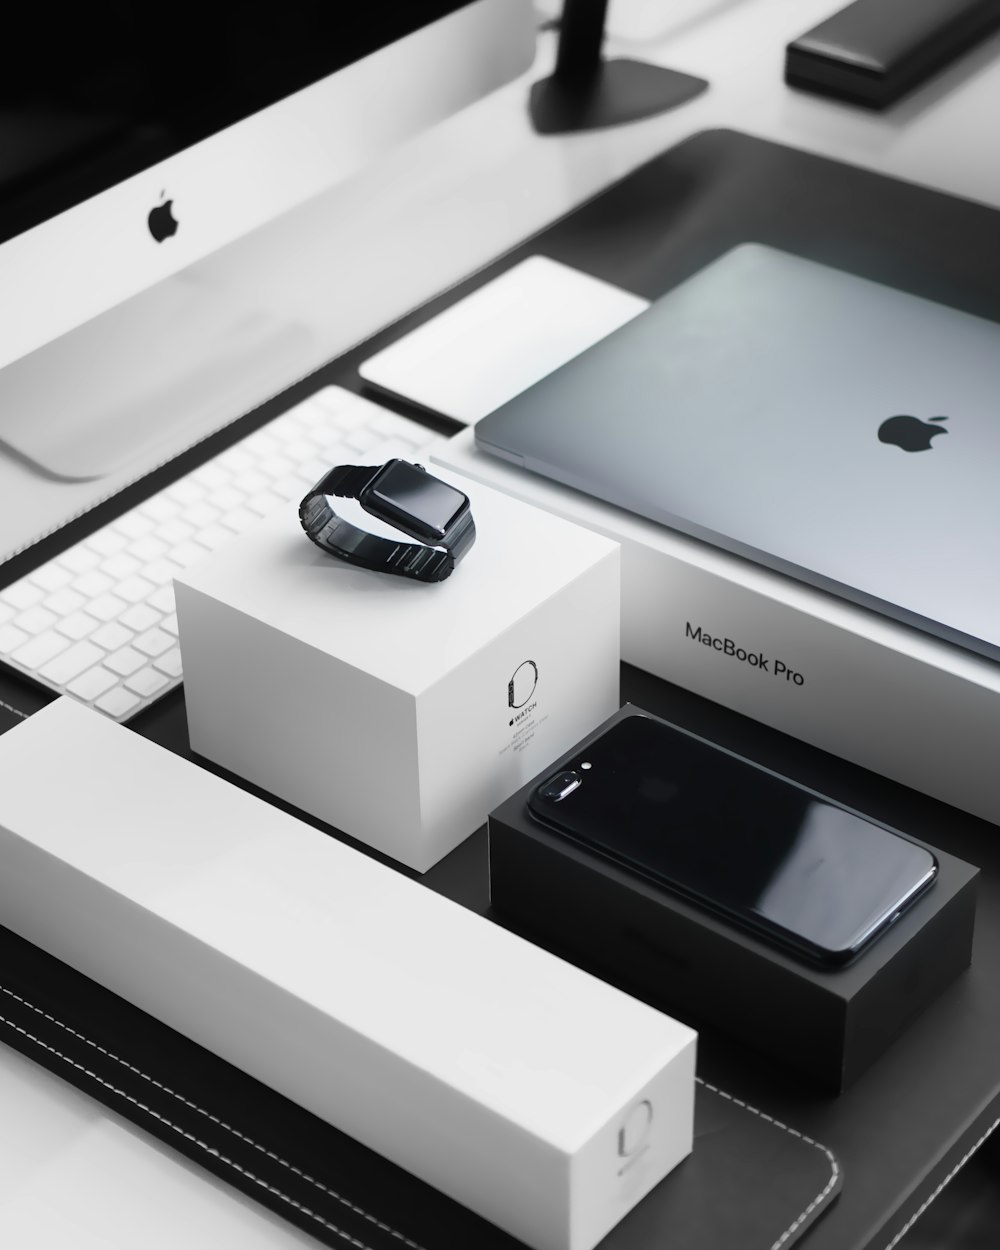 Space Black Case Apple Watch, silbernes MacBook Pro, tiefschwarzes iPhone 7 Plus und silberner iMac mit entsprechenden Boxen